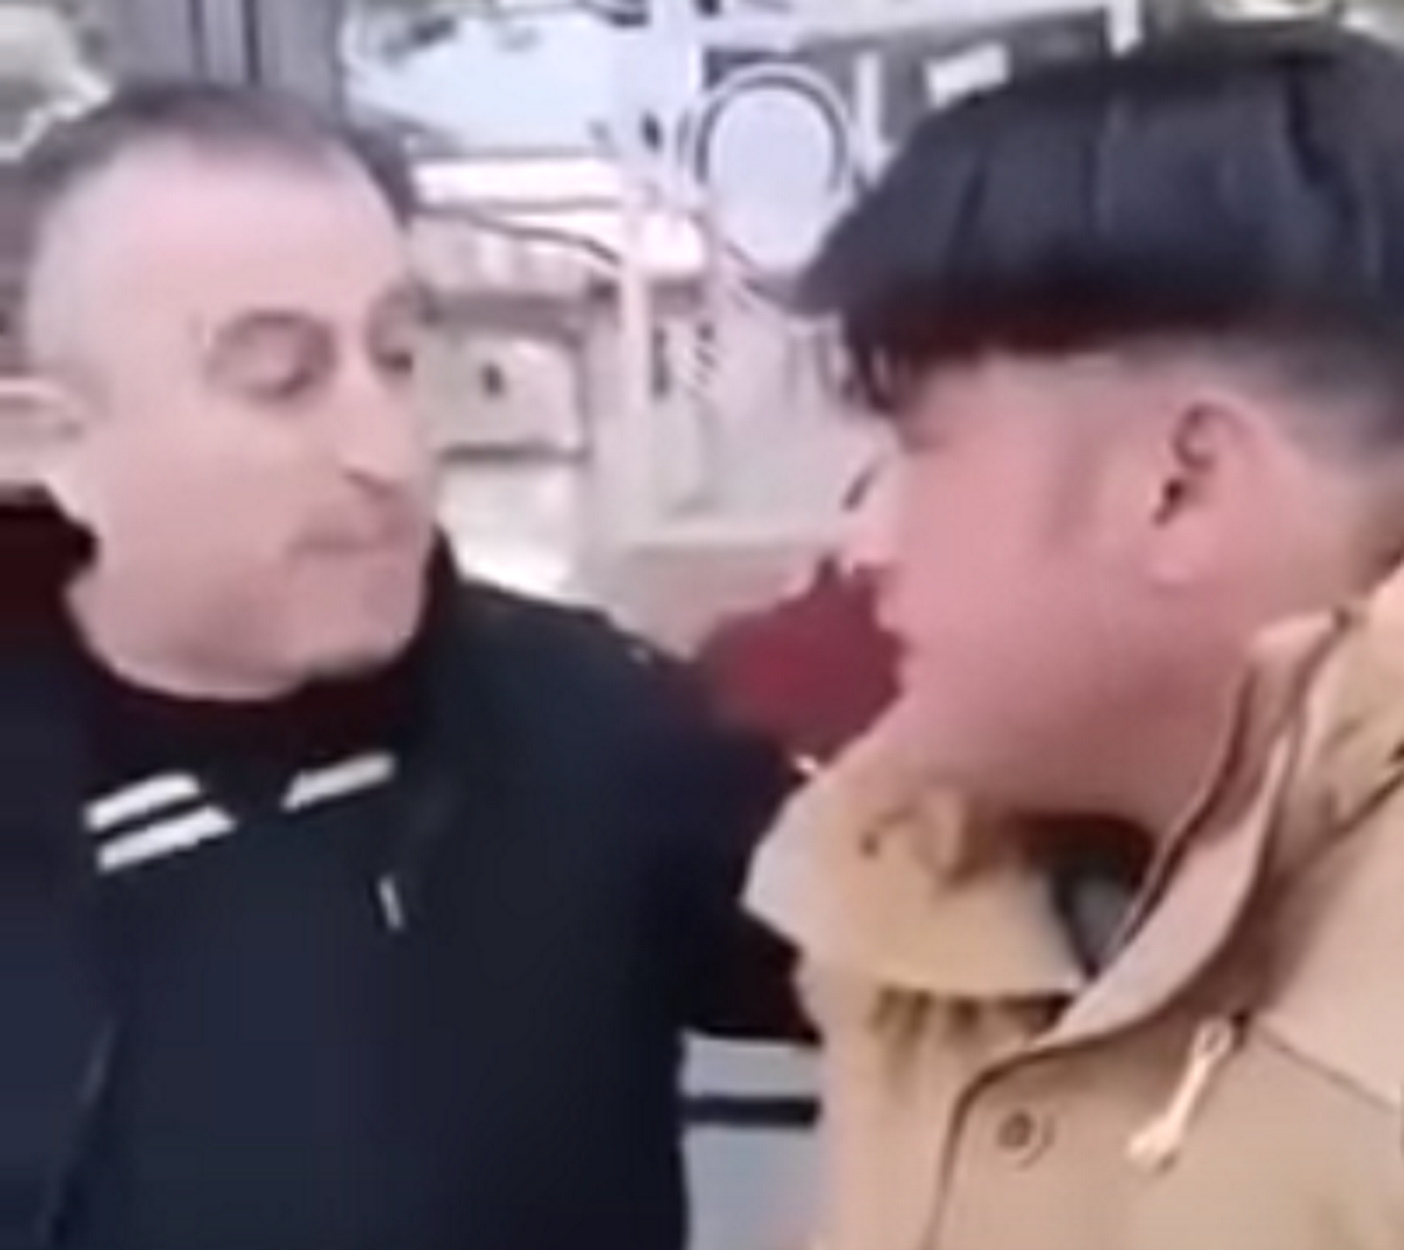 Παρέμβαση εισαγγελέα για το βίντεο με οπαδό του ΠΑΟΚ να αναγκάζει μετανάστη να κάνει το σταυρό του (VIDEO)